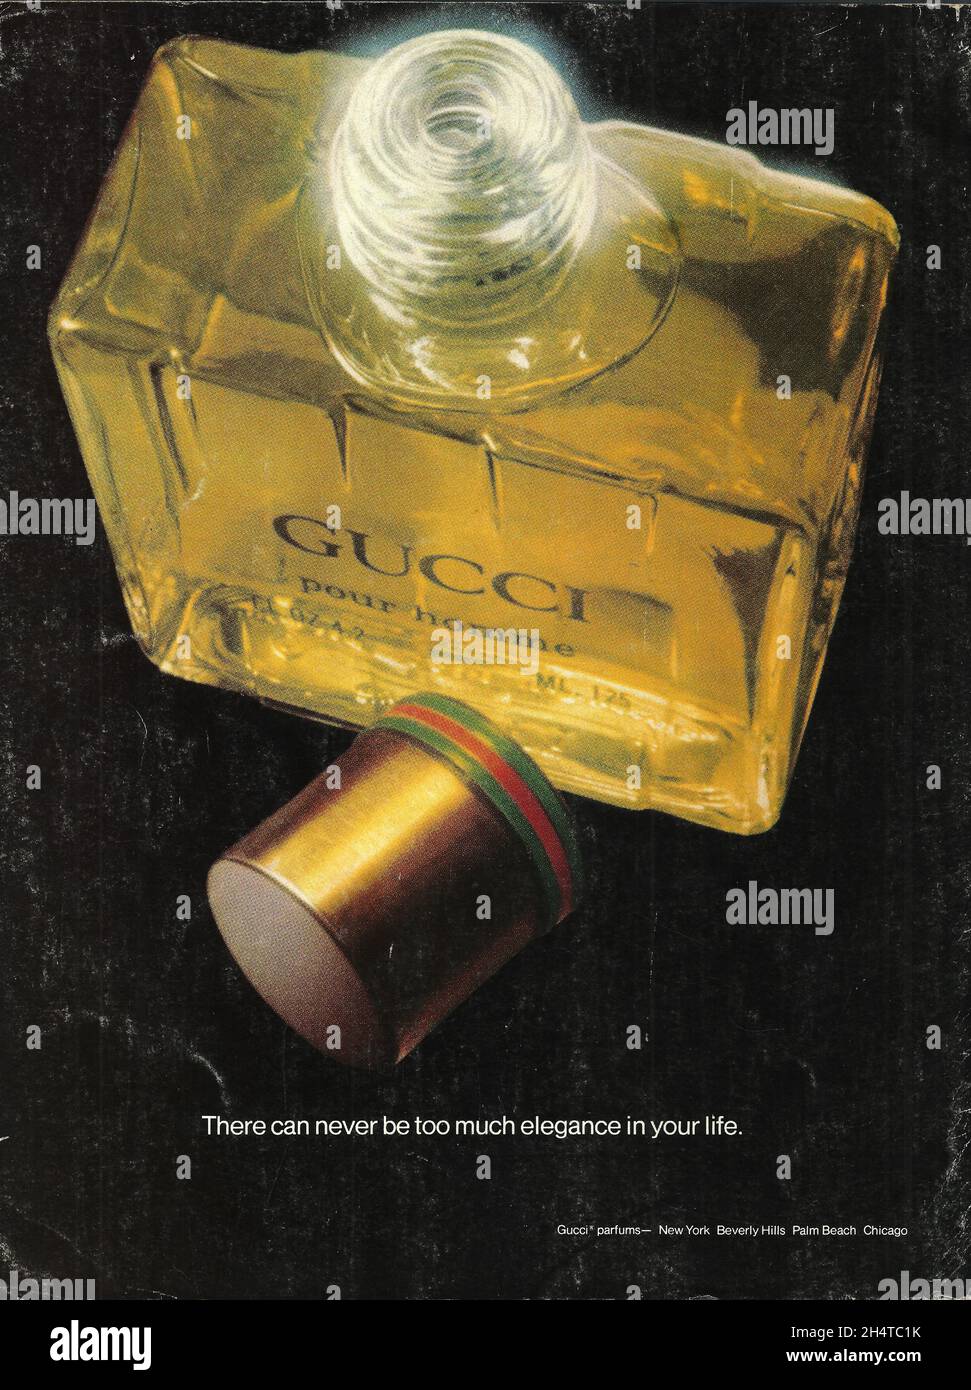 Gucci pour homme parfums vintage advertisement advert ad 1980s 1970s Stock Photo